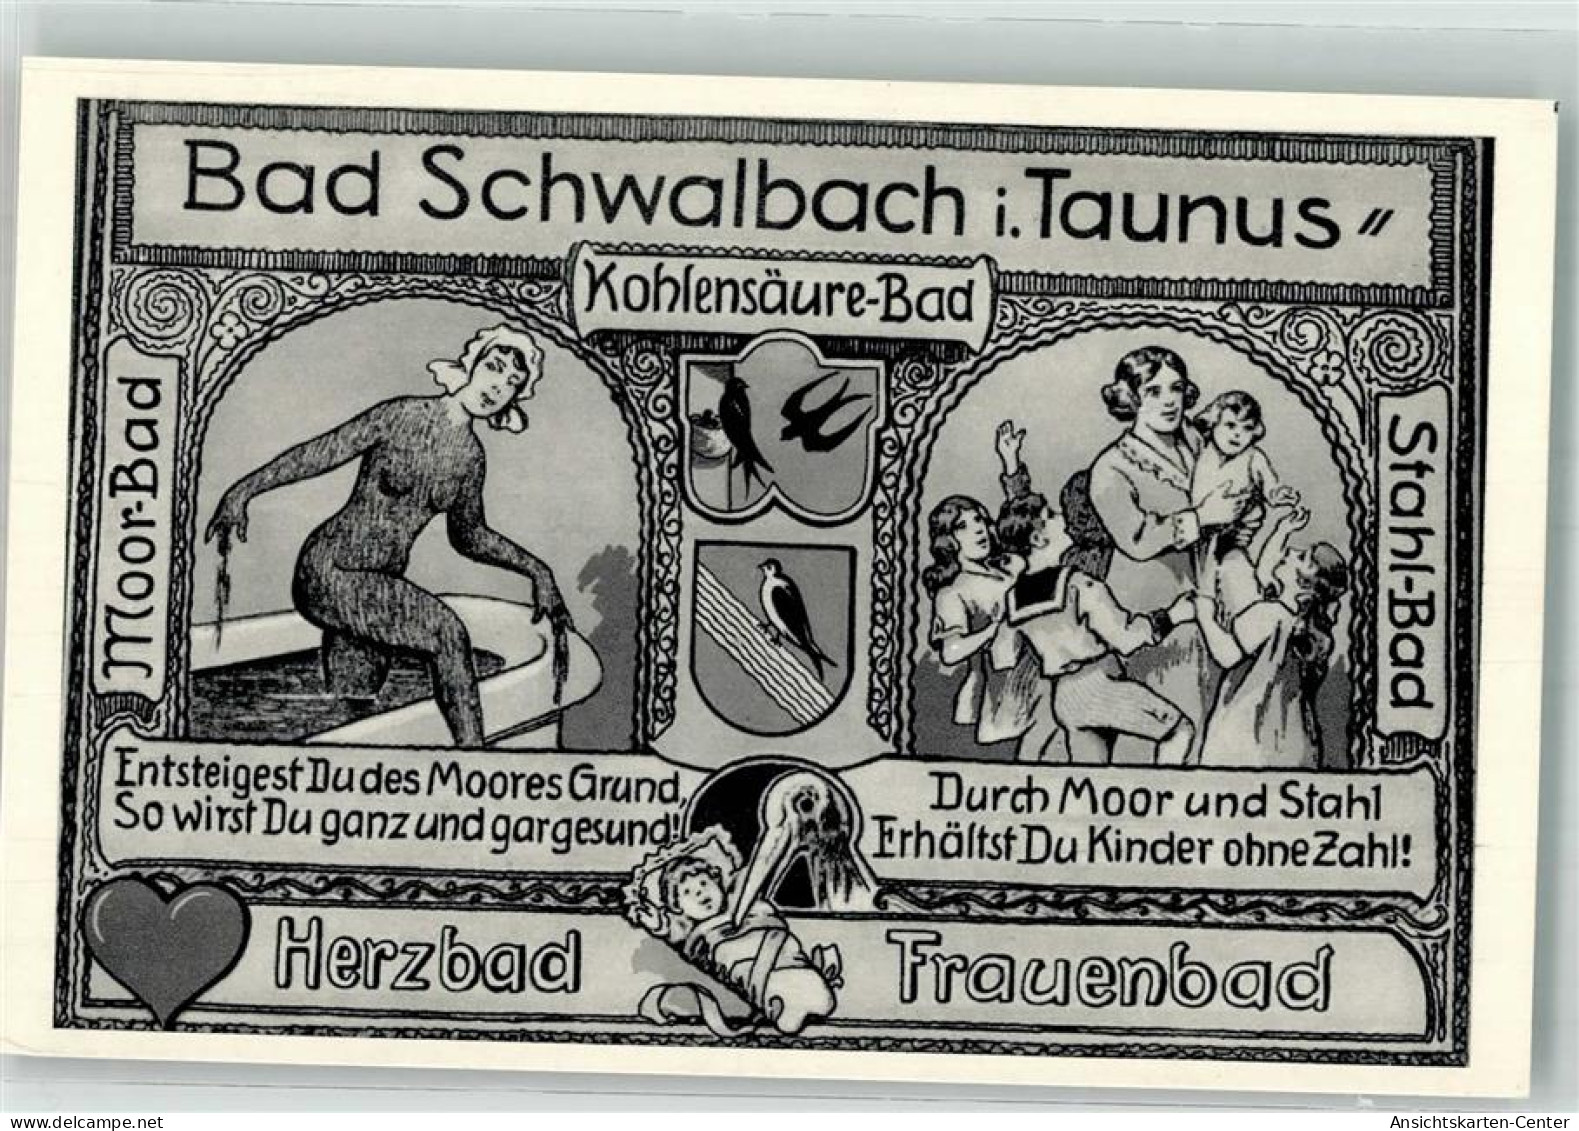 39851305 - Bad Schwalbach - Bad Schwalbach